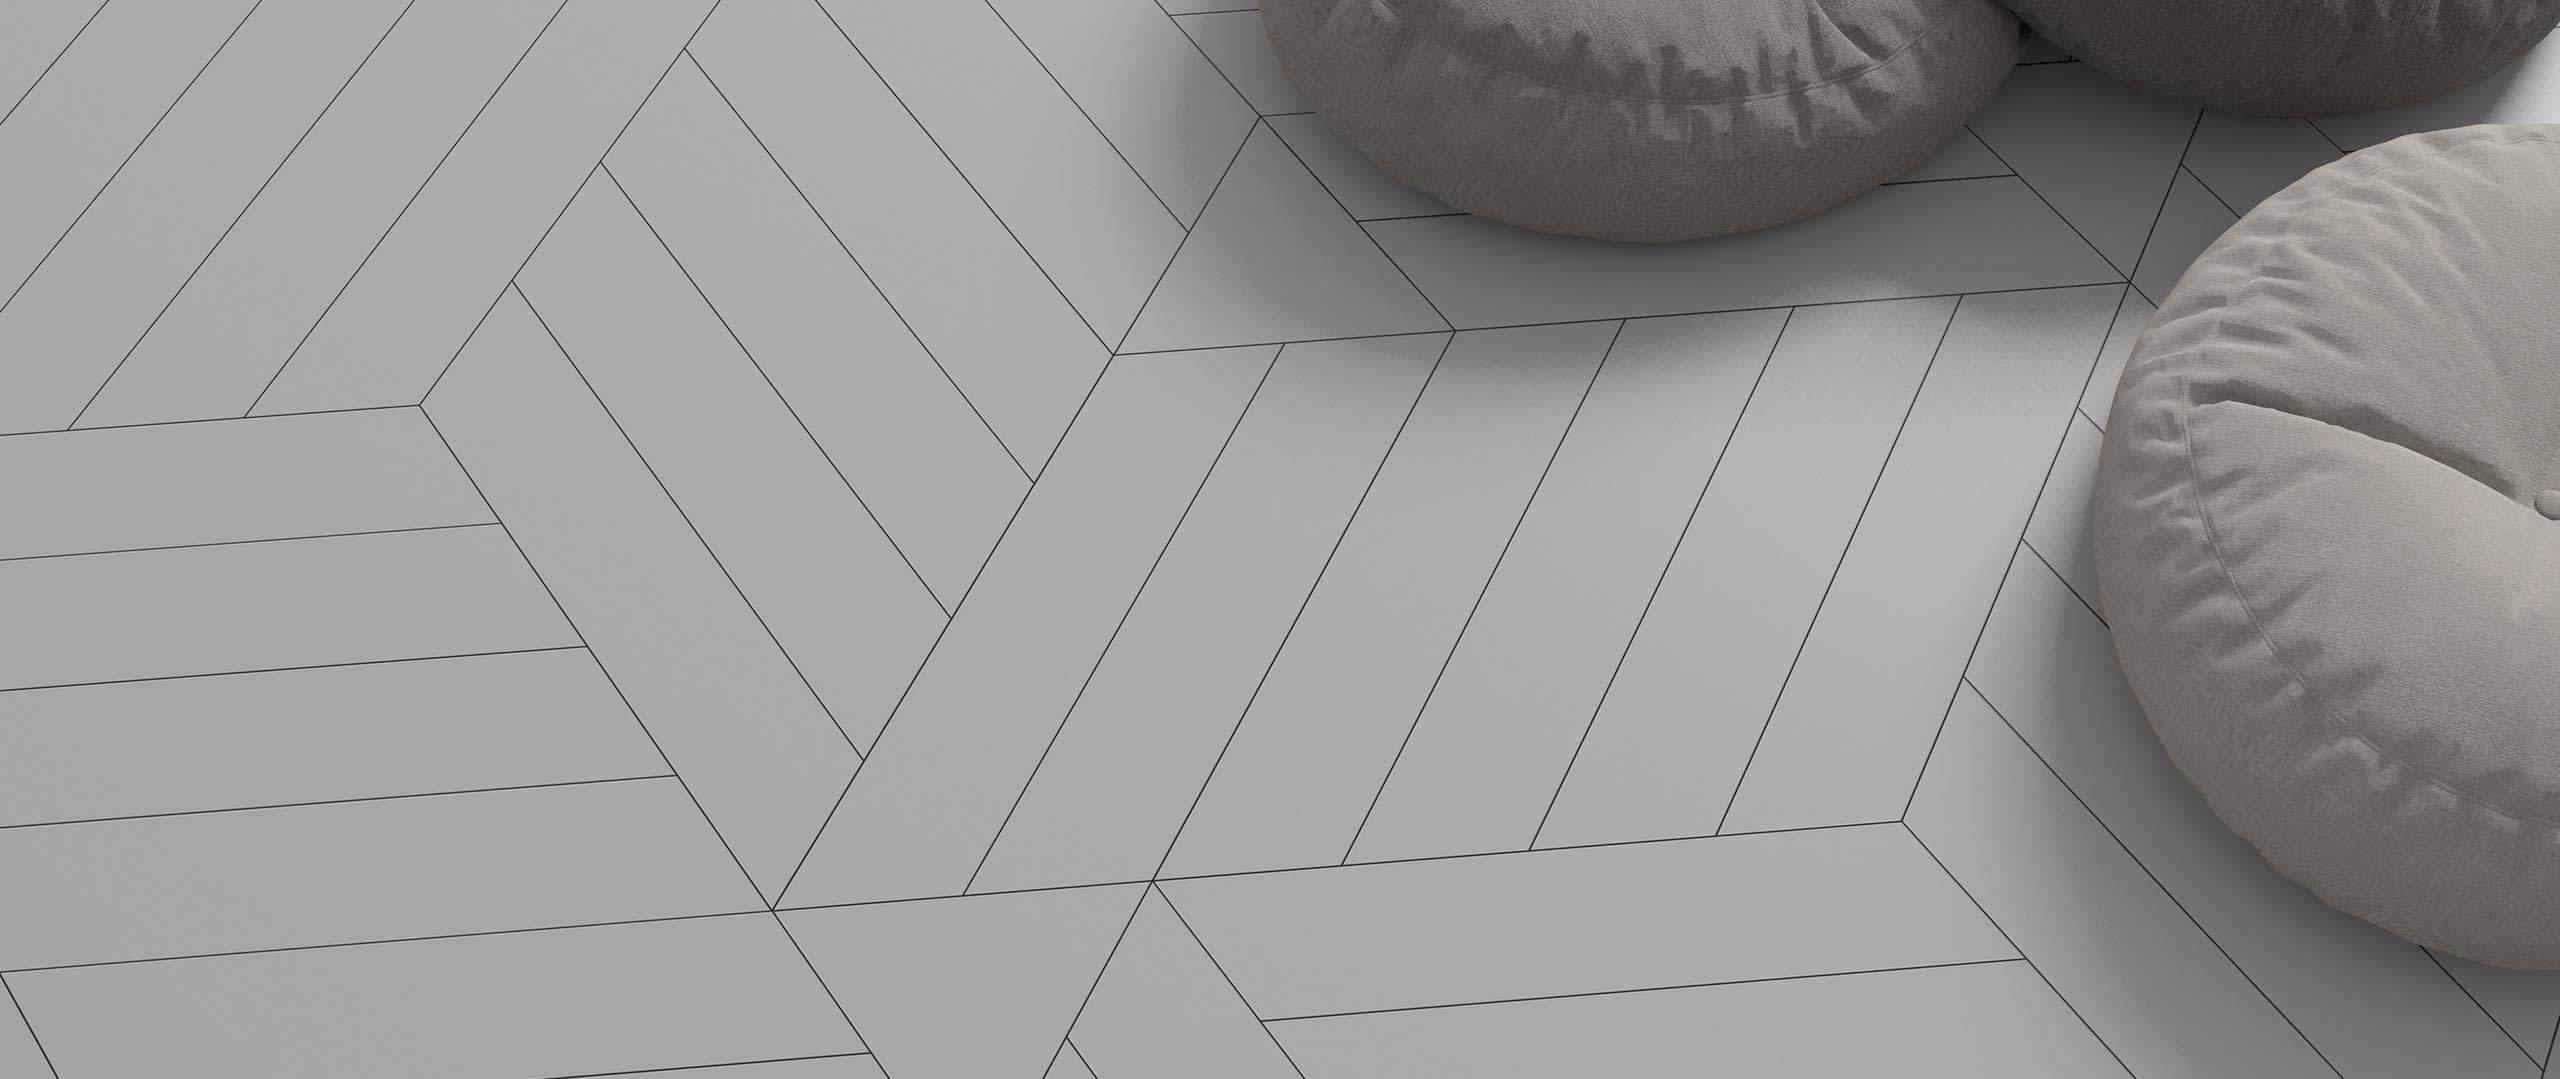 The uniqueness in using black terrazzo tiles